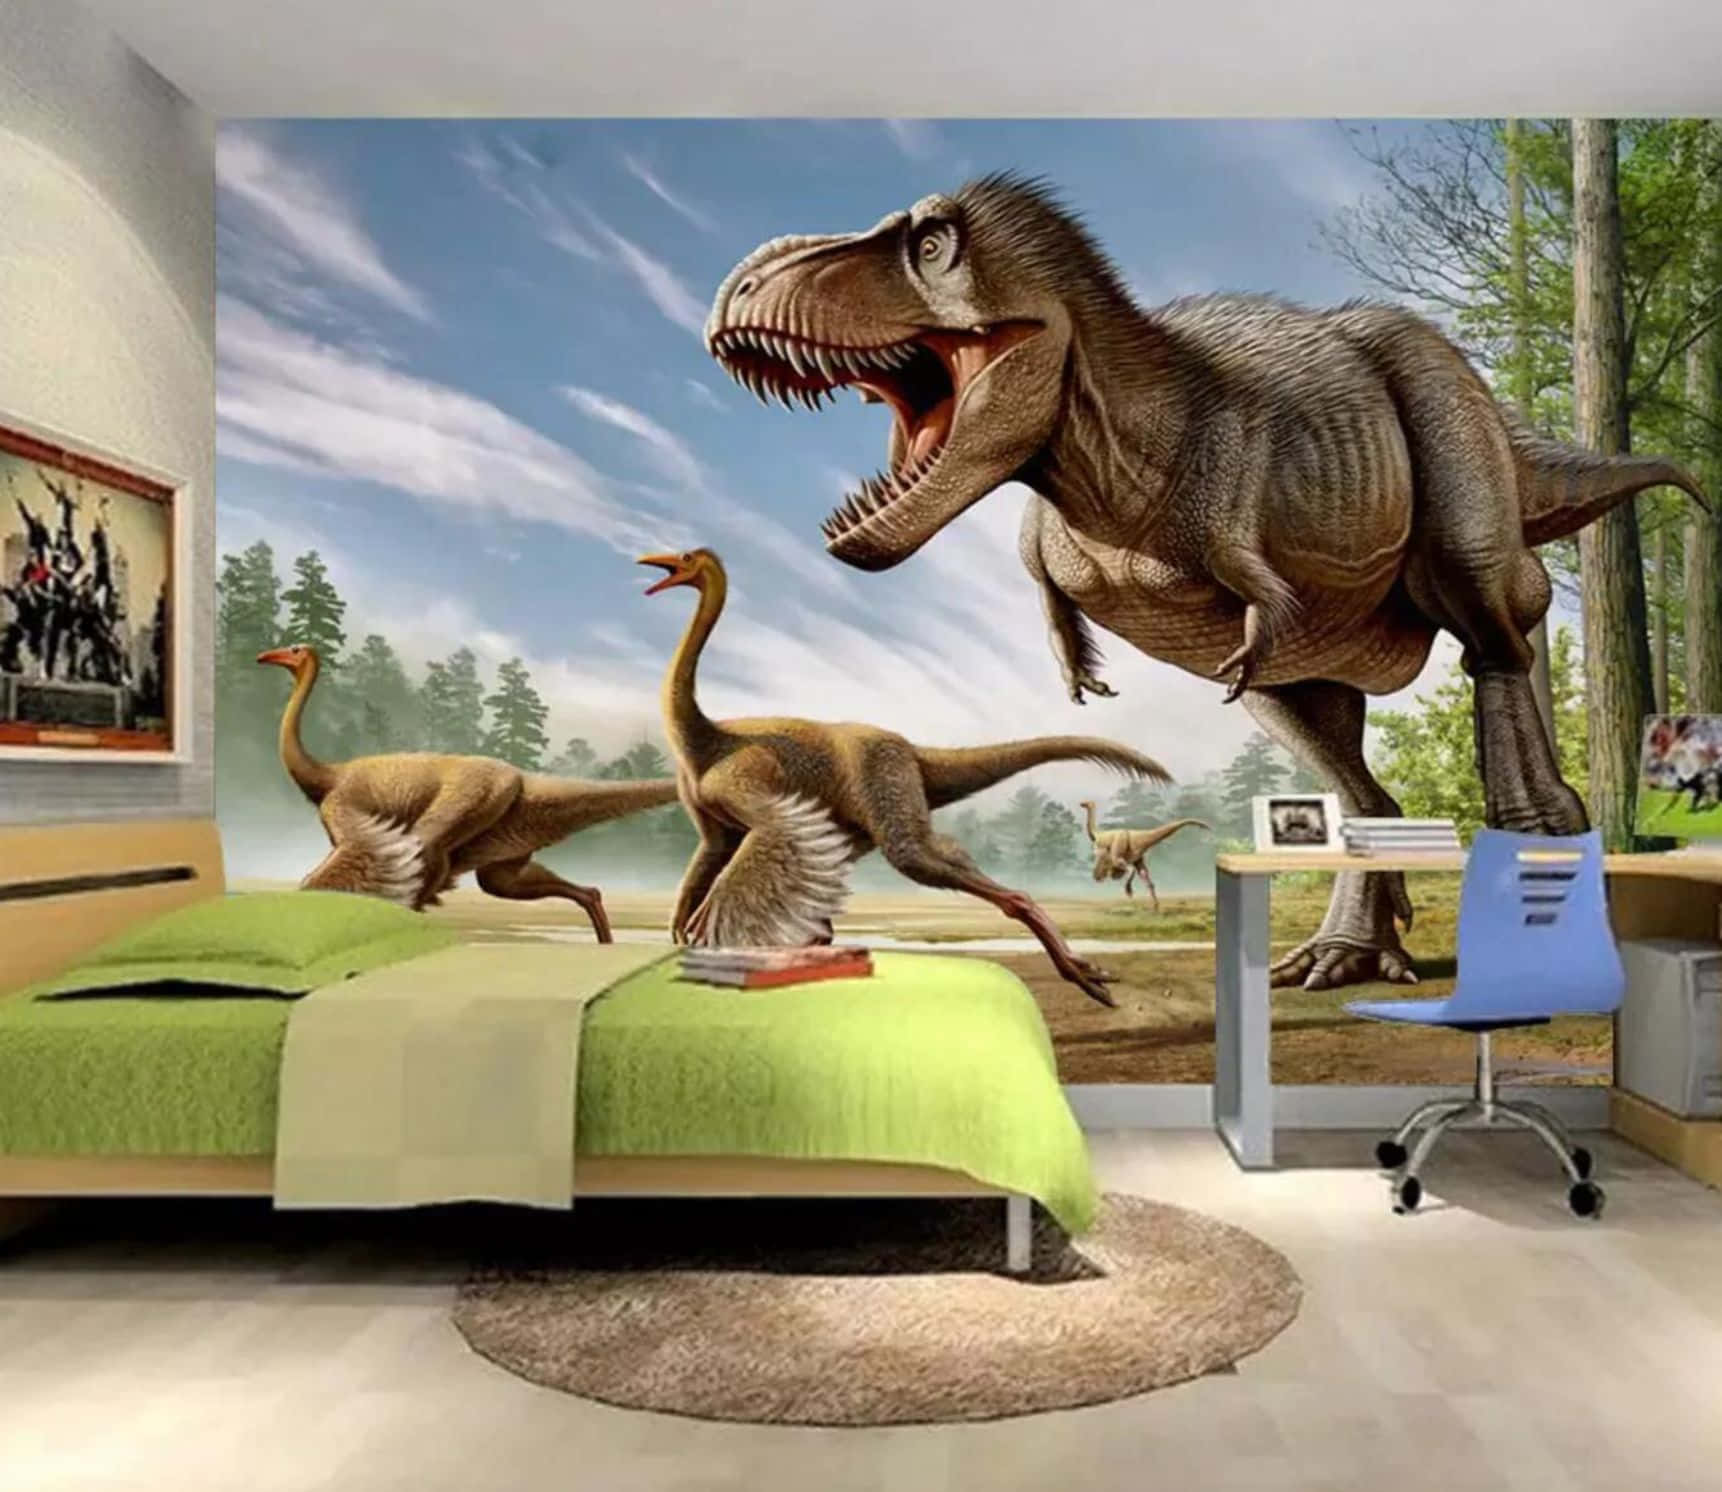 Impresionantedinosaurio En 3d Rugiendo En Un Paisaje Exuberante. Fondo de pantalla